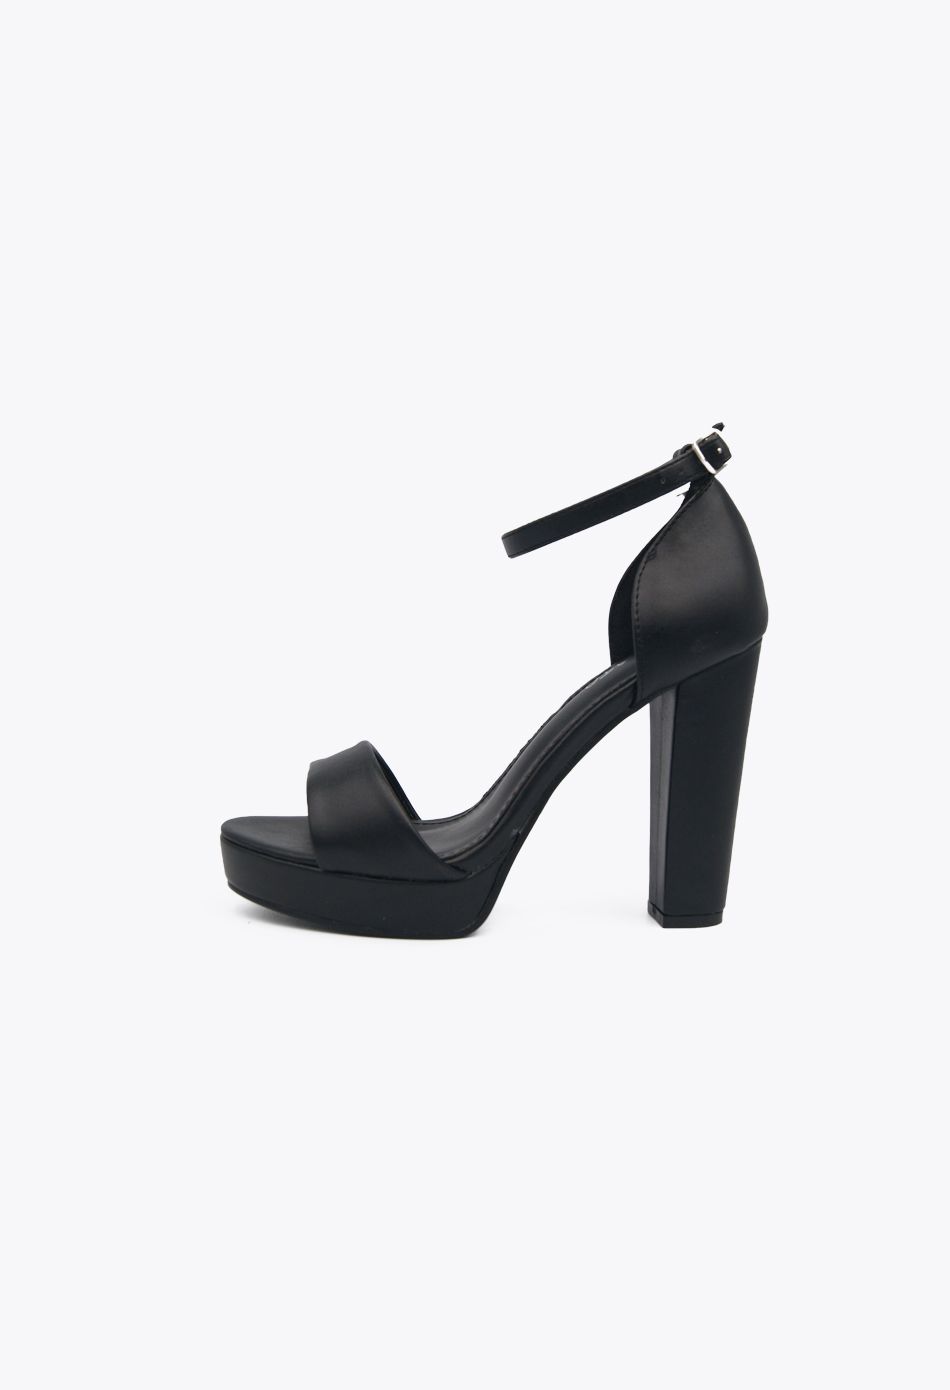 Πέδιλα με Χοντρό Ψηλό Τακούνι & Φιάπα Μαύρο / LL-1211-black Ανοιχτά Παπούτσια joya.gr